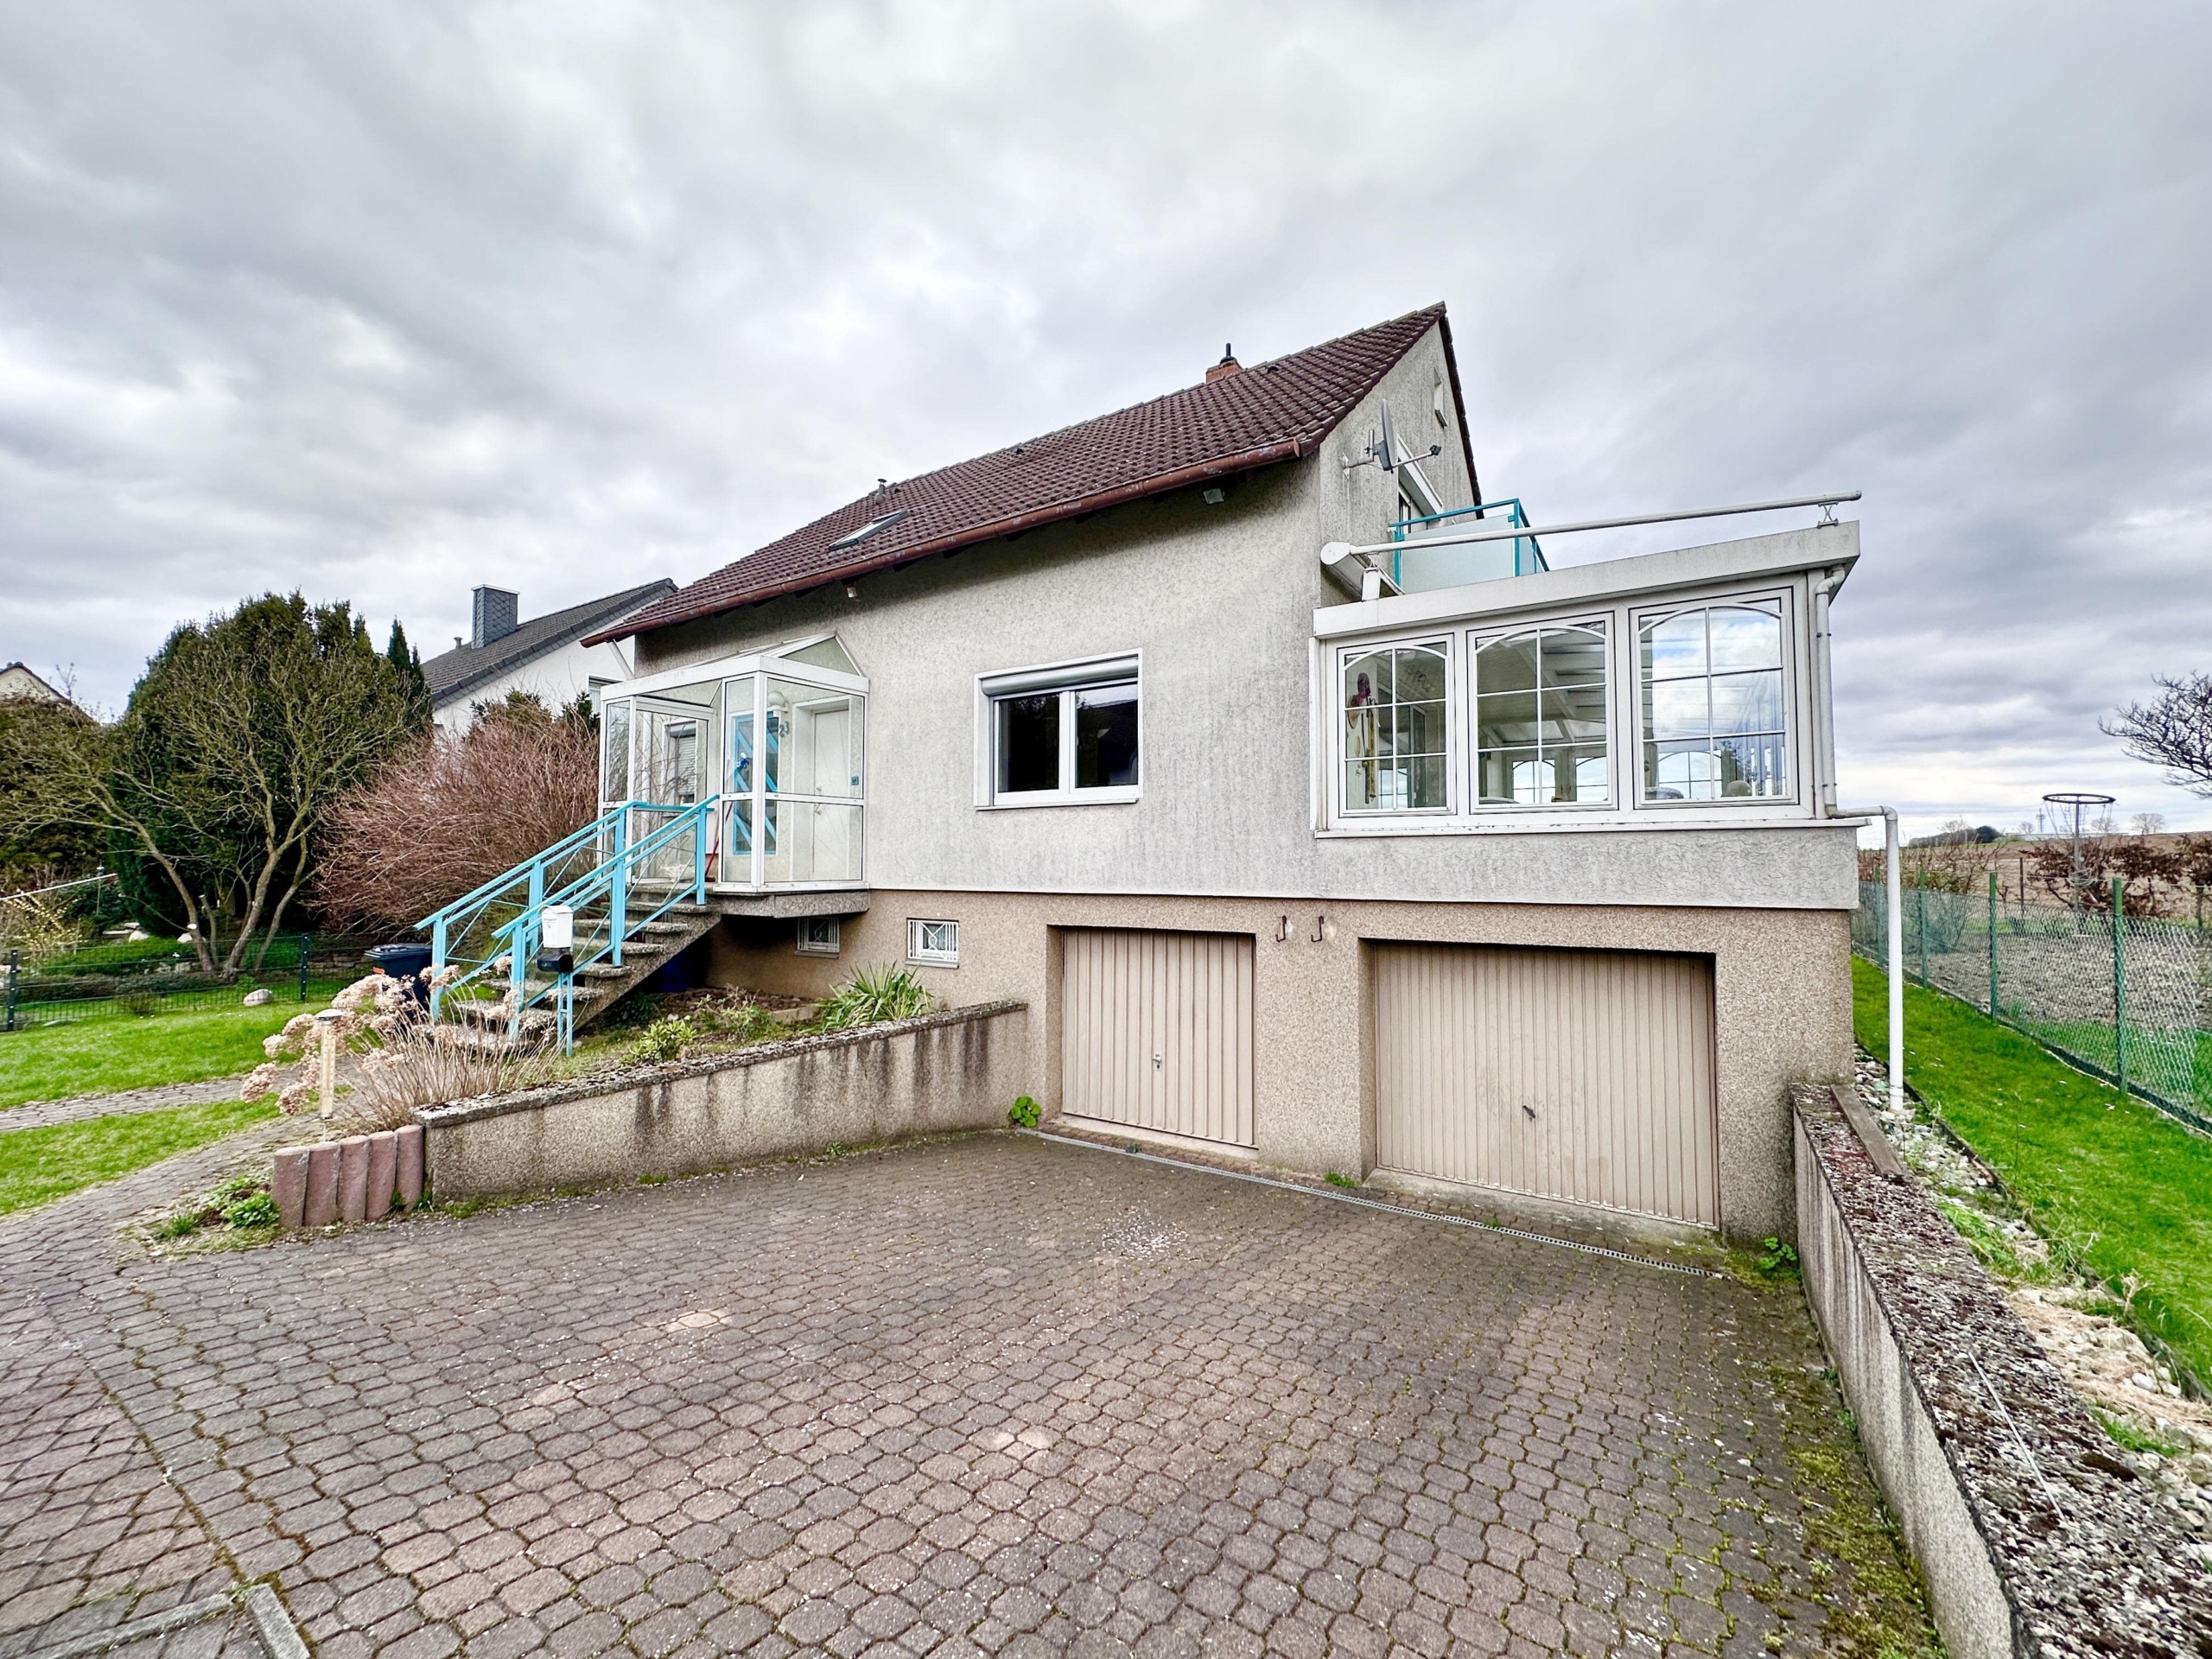 Solides Wohnhaus mit Keller und Doppelgarage in guter und ruhiger Feldrandlage in Seelze-Harenberg, 30926 Seelze, Einfamilienhaus